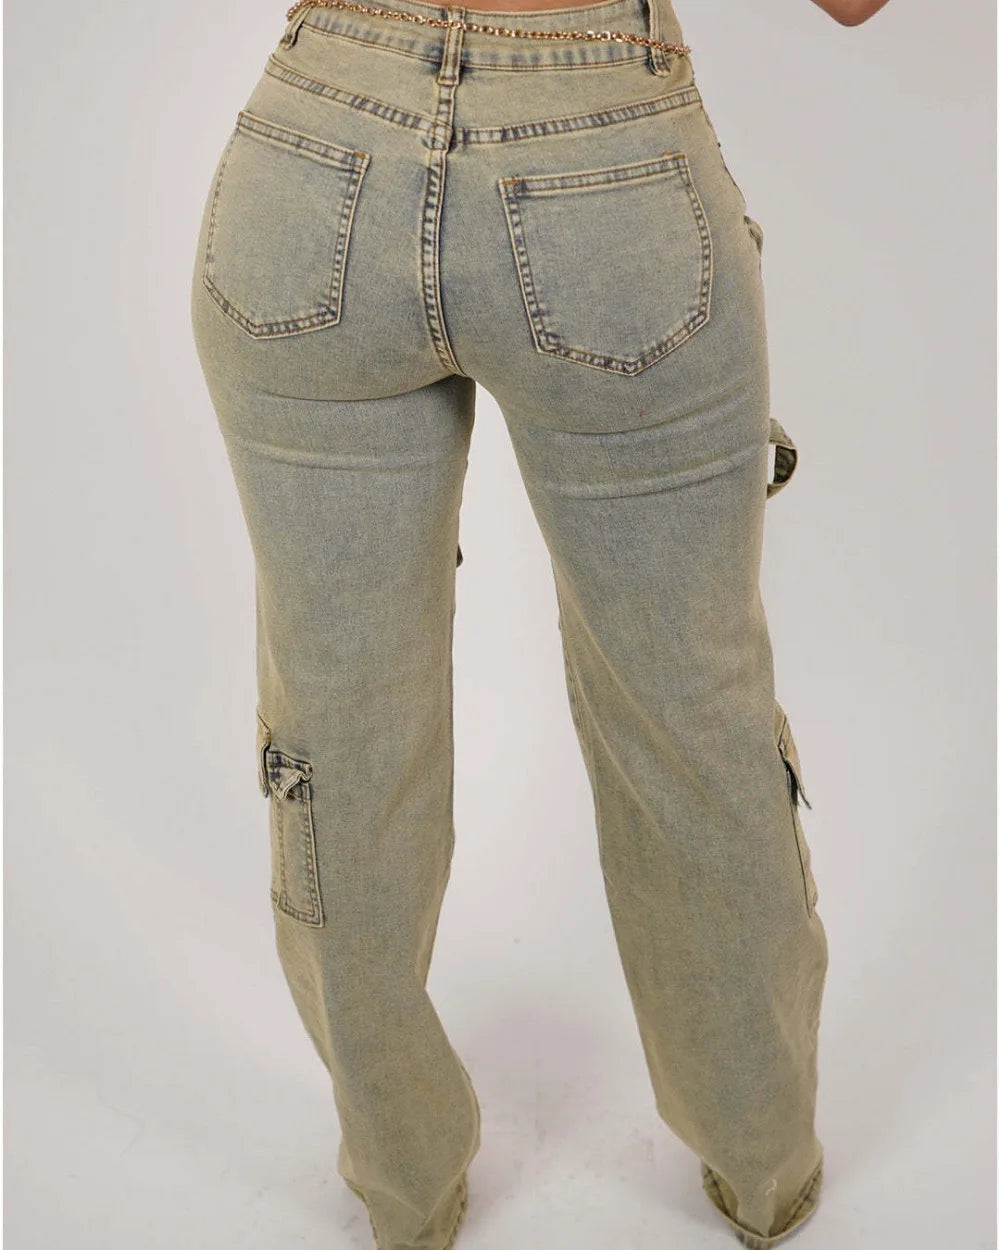 FZ Women's Retro Denim High Waisted Button Zipper Pants - FZwear